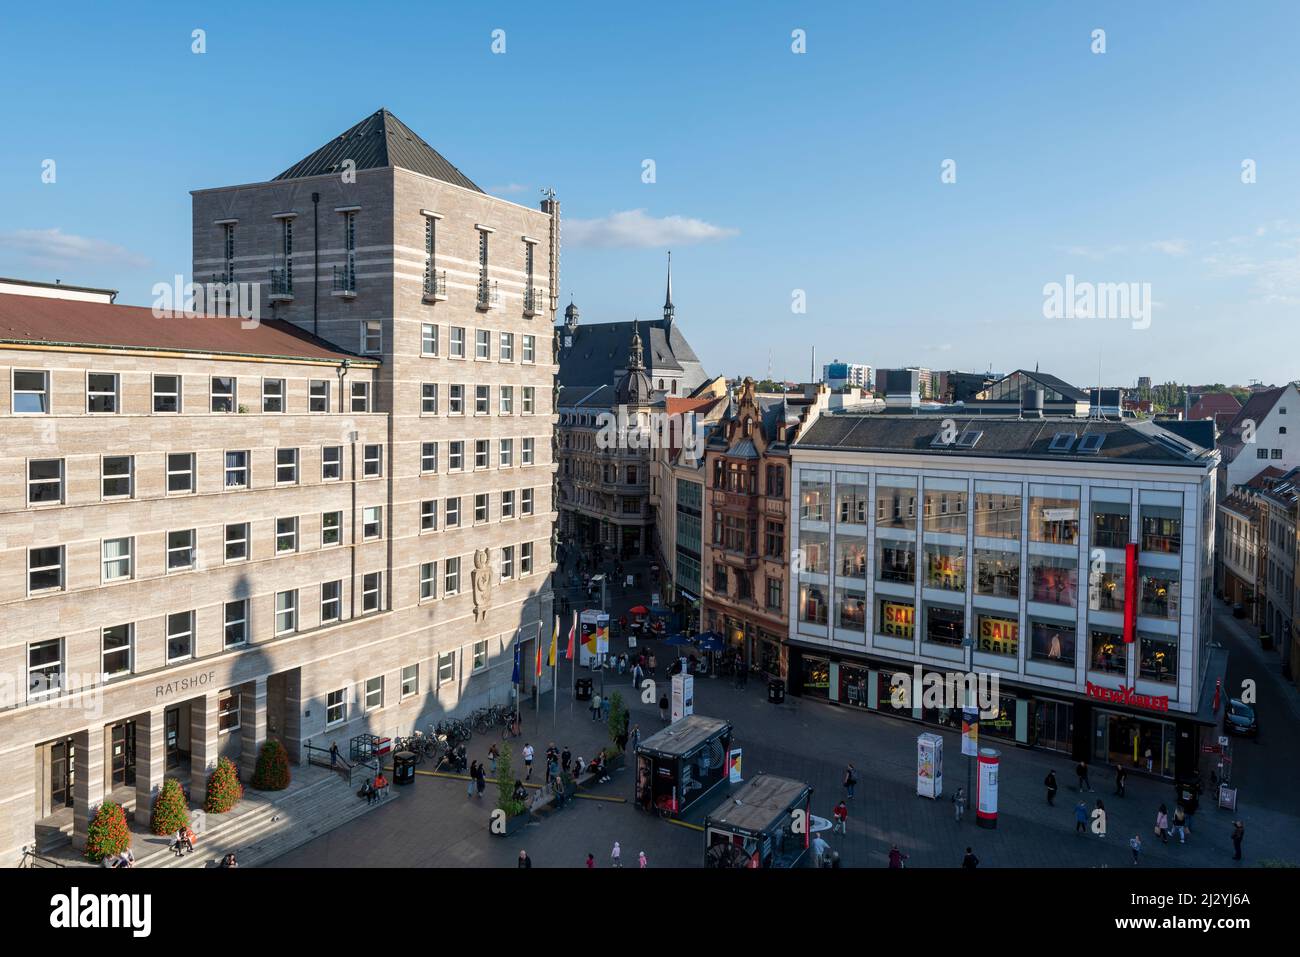 Ratshof, Sitz der Stadtverwaltung, direkt neben dem IT-Bekleidungsgeschäft New Yorker, Halle an der Saale, Sachsen-Anhalt, Deutschland Stockfoto